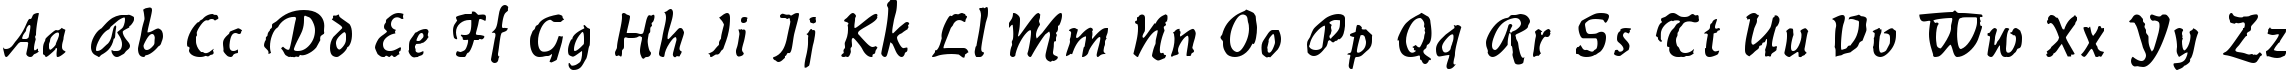 Пример написания английского алфавита шрифтом Balthazar Regular